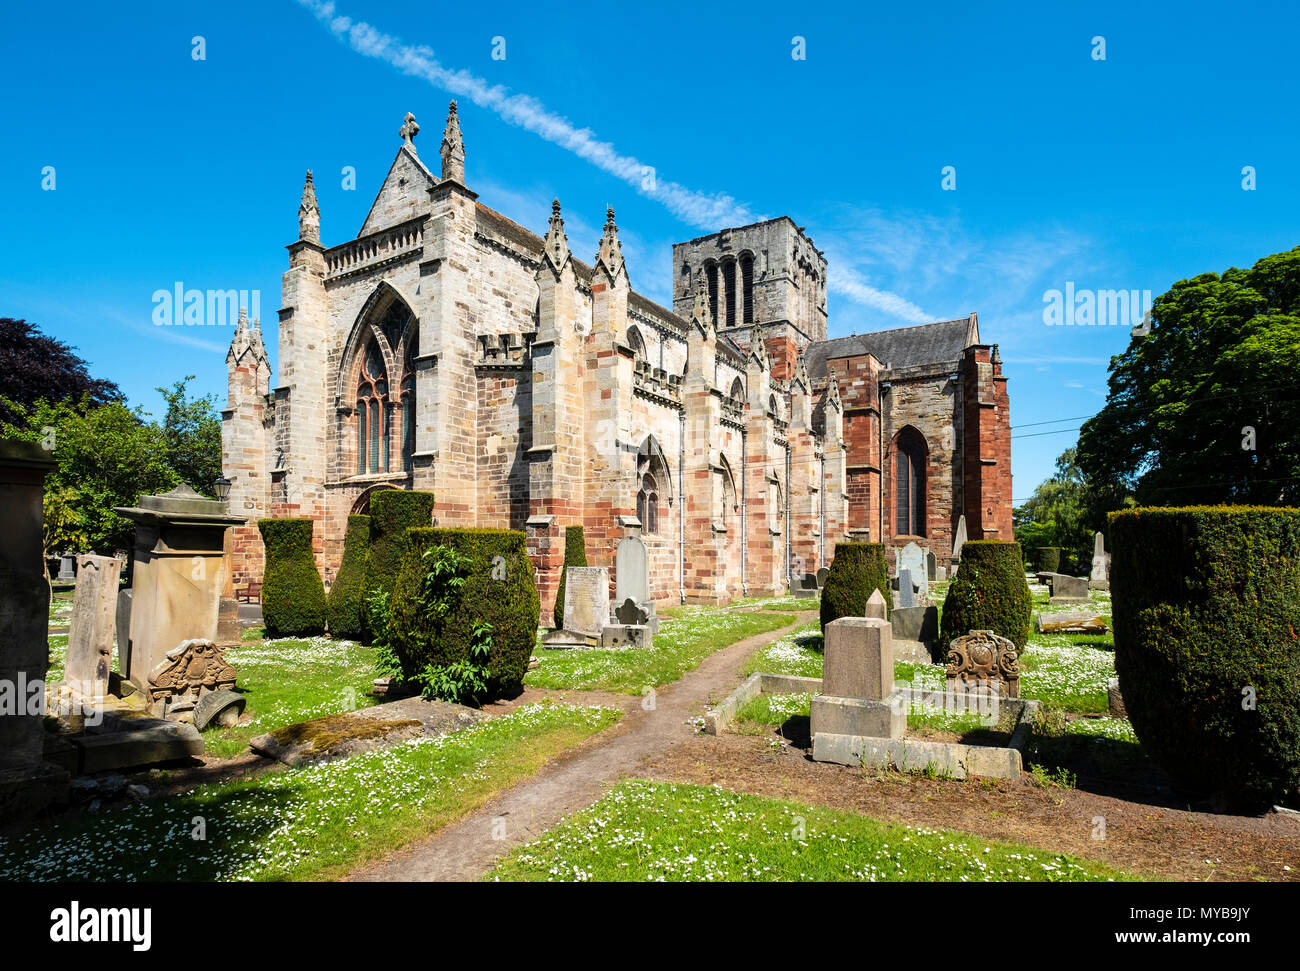 St Mary's Parish Church in Haddington, East Lothian, Scotland, UK Stock Photo